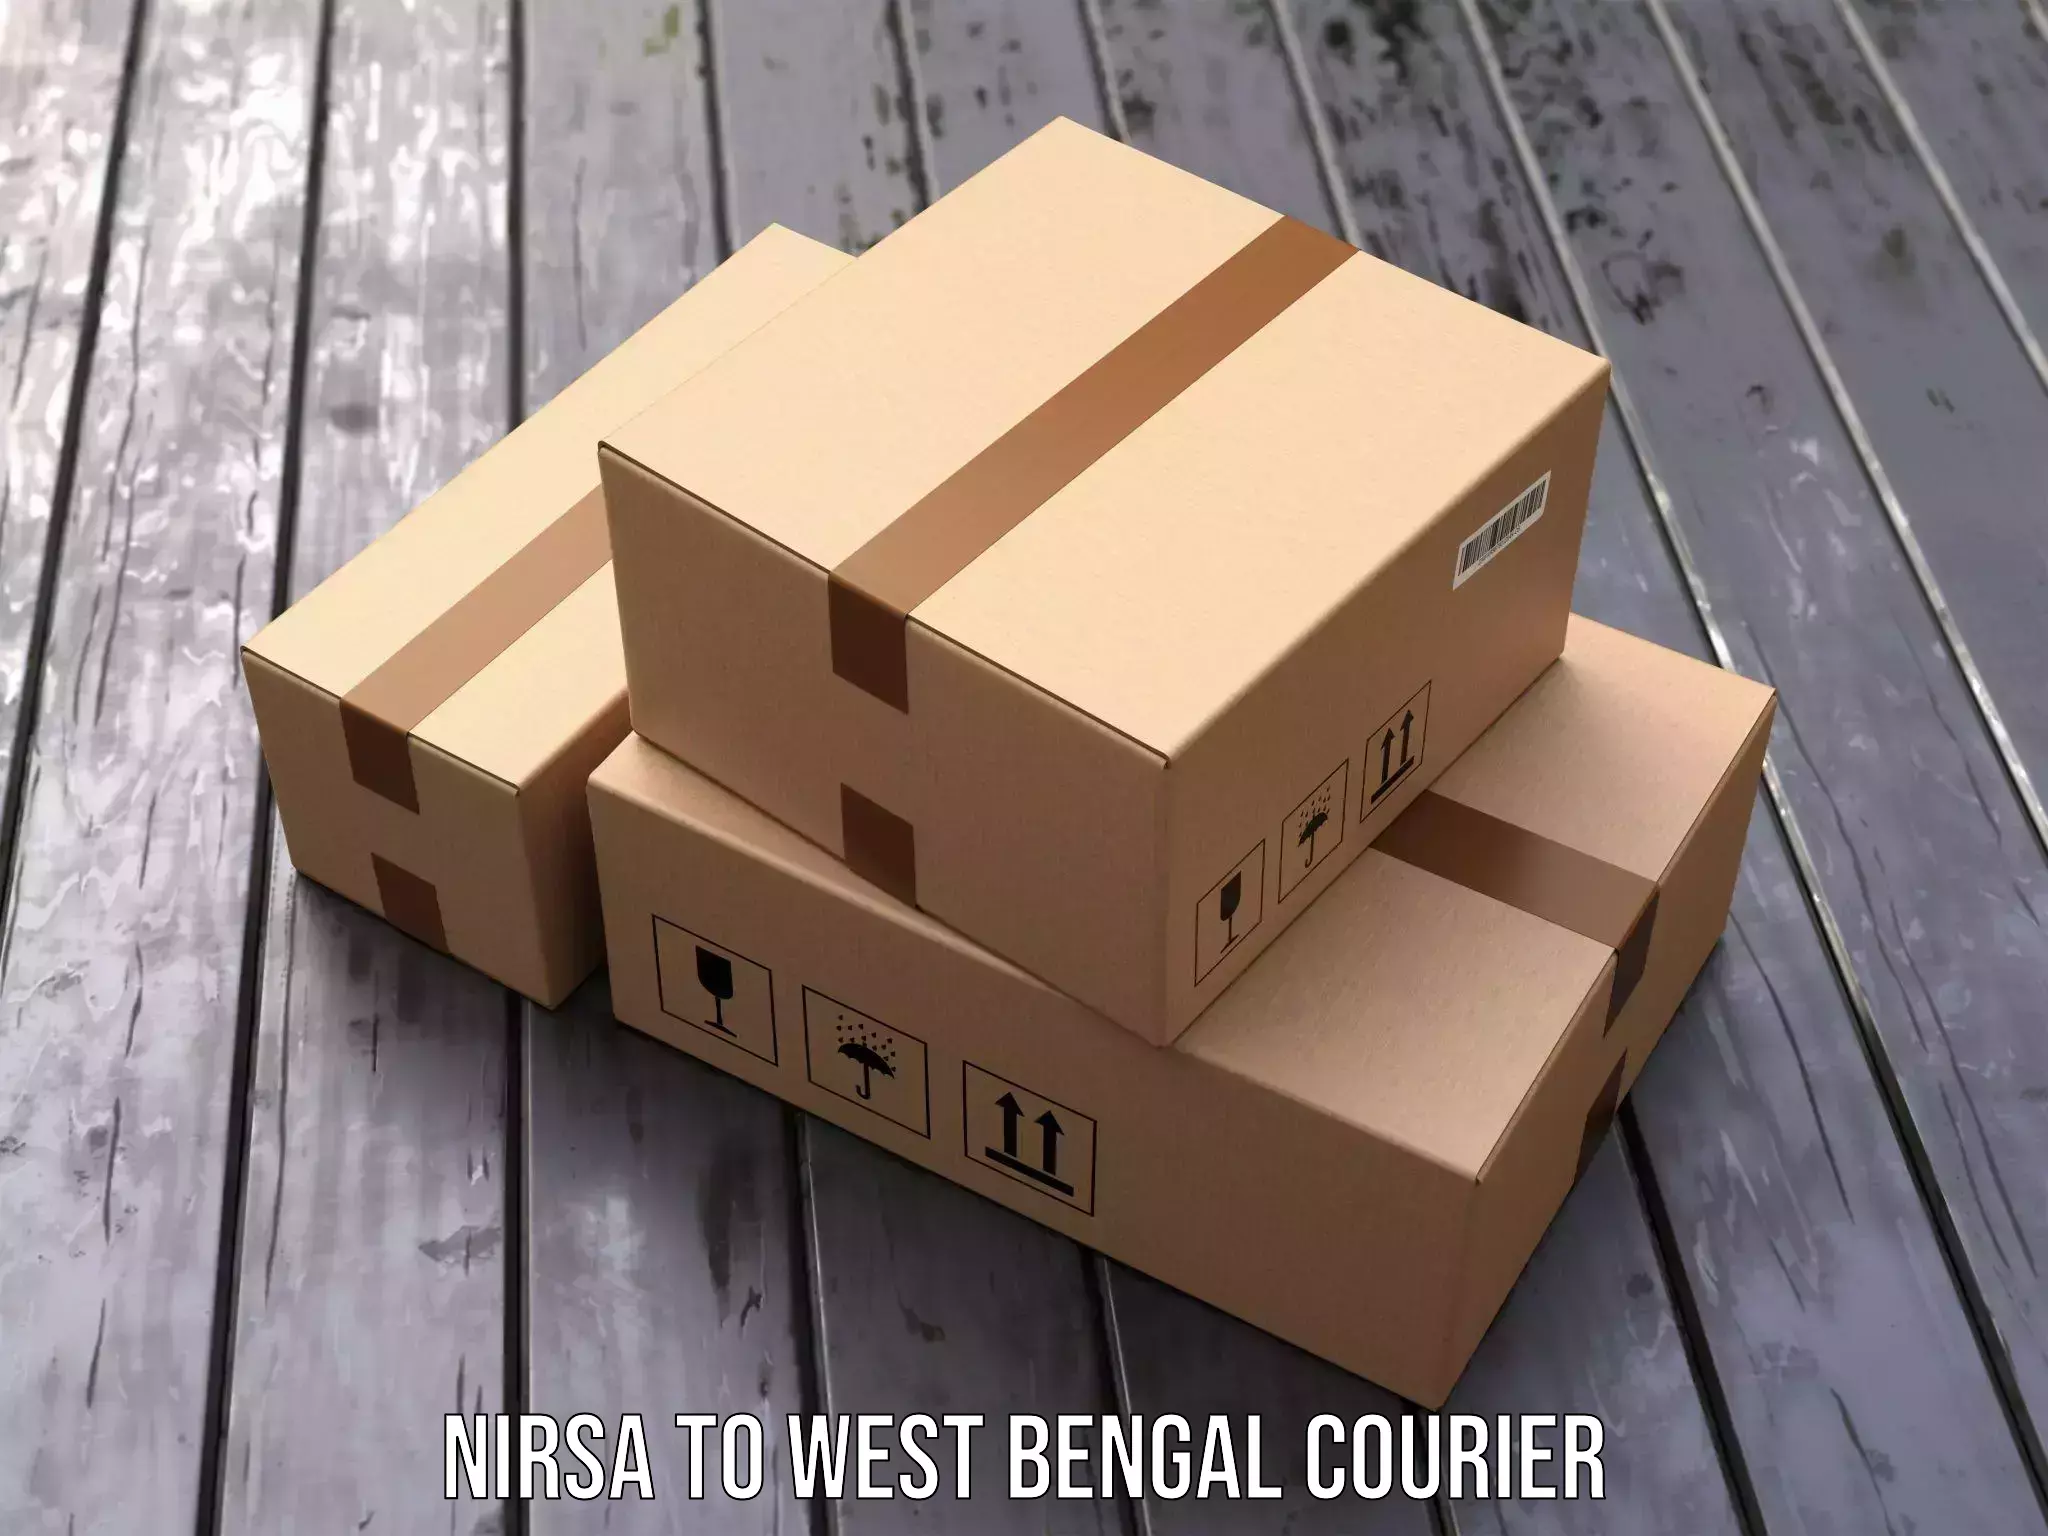 Efficient parcel service Nirsa to West Bengal